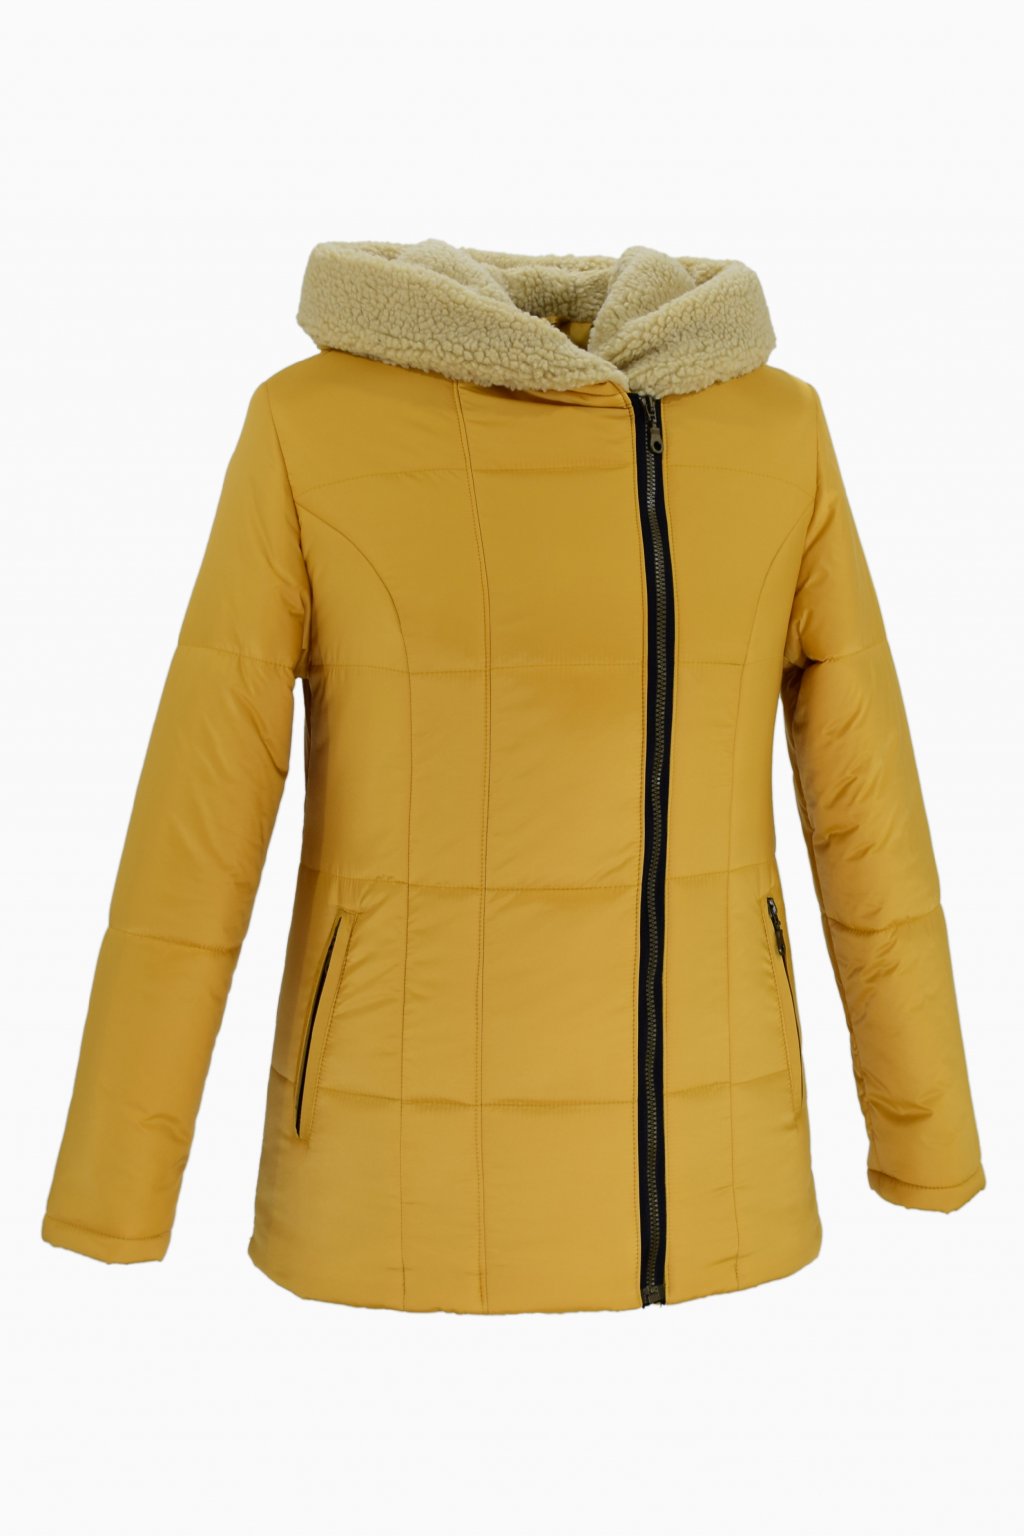 Dámská žlutá zimní bunda XENA nadměrné velikosti.